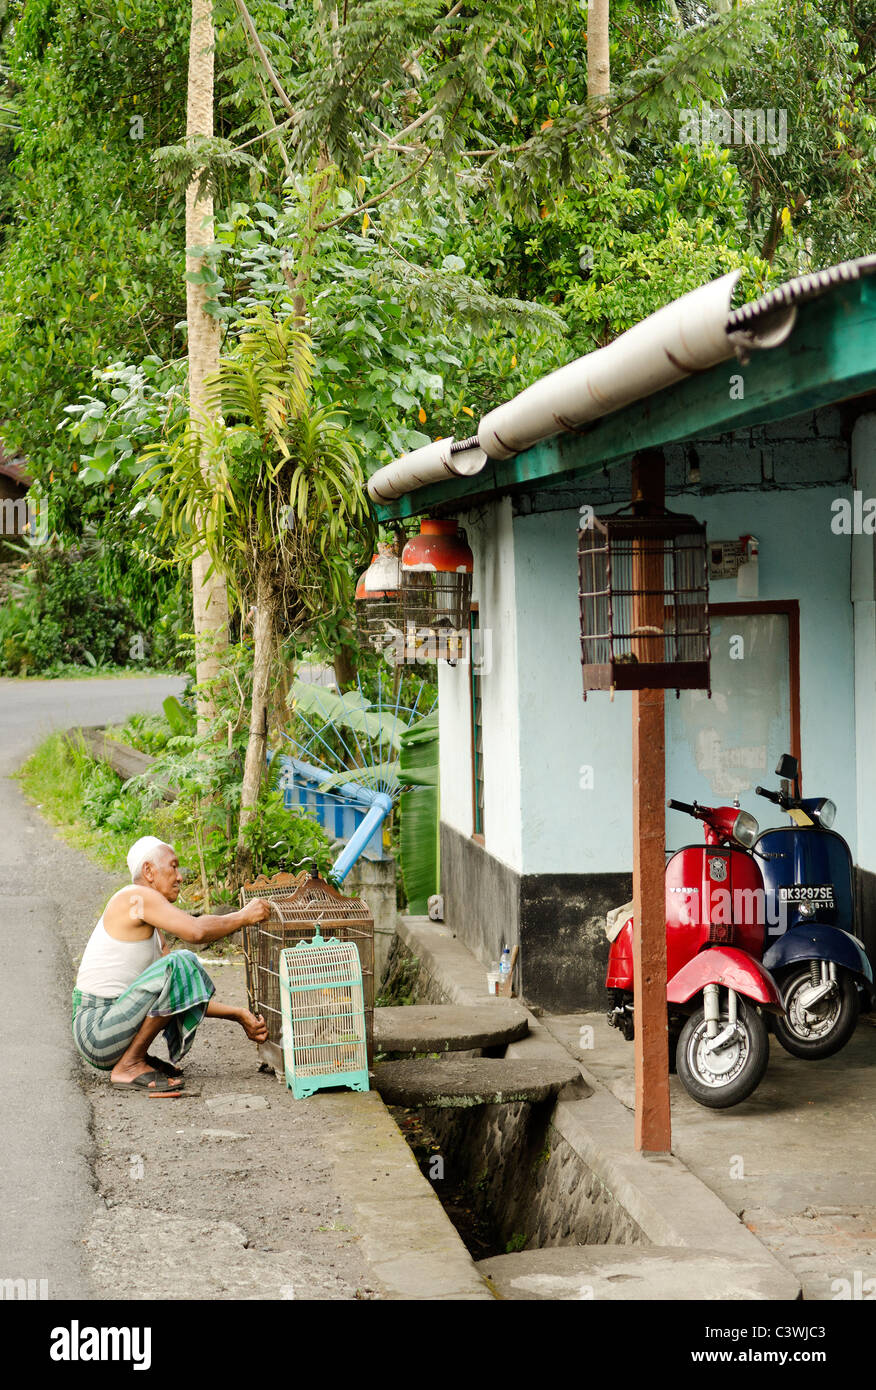 street scene in bali indonesia Stock Photo